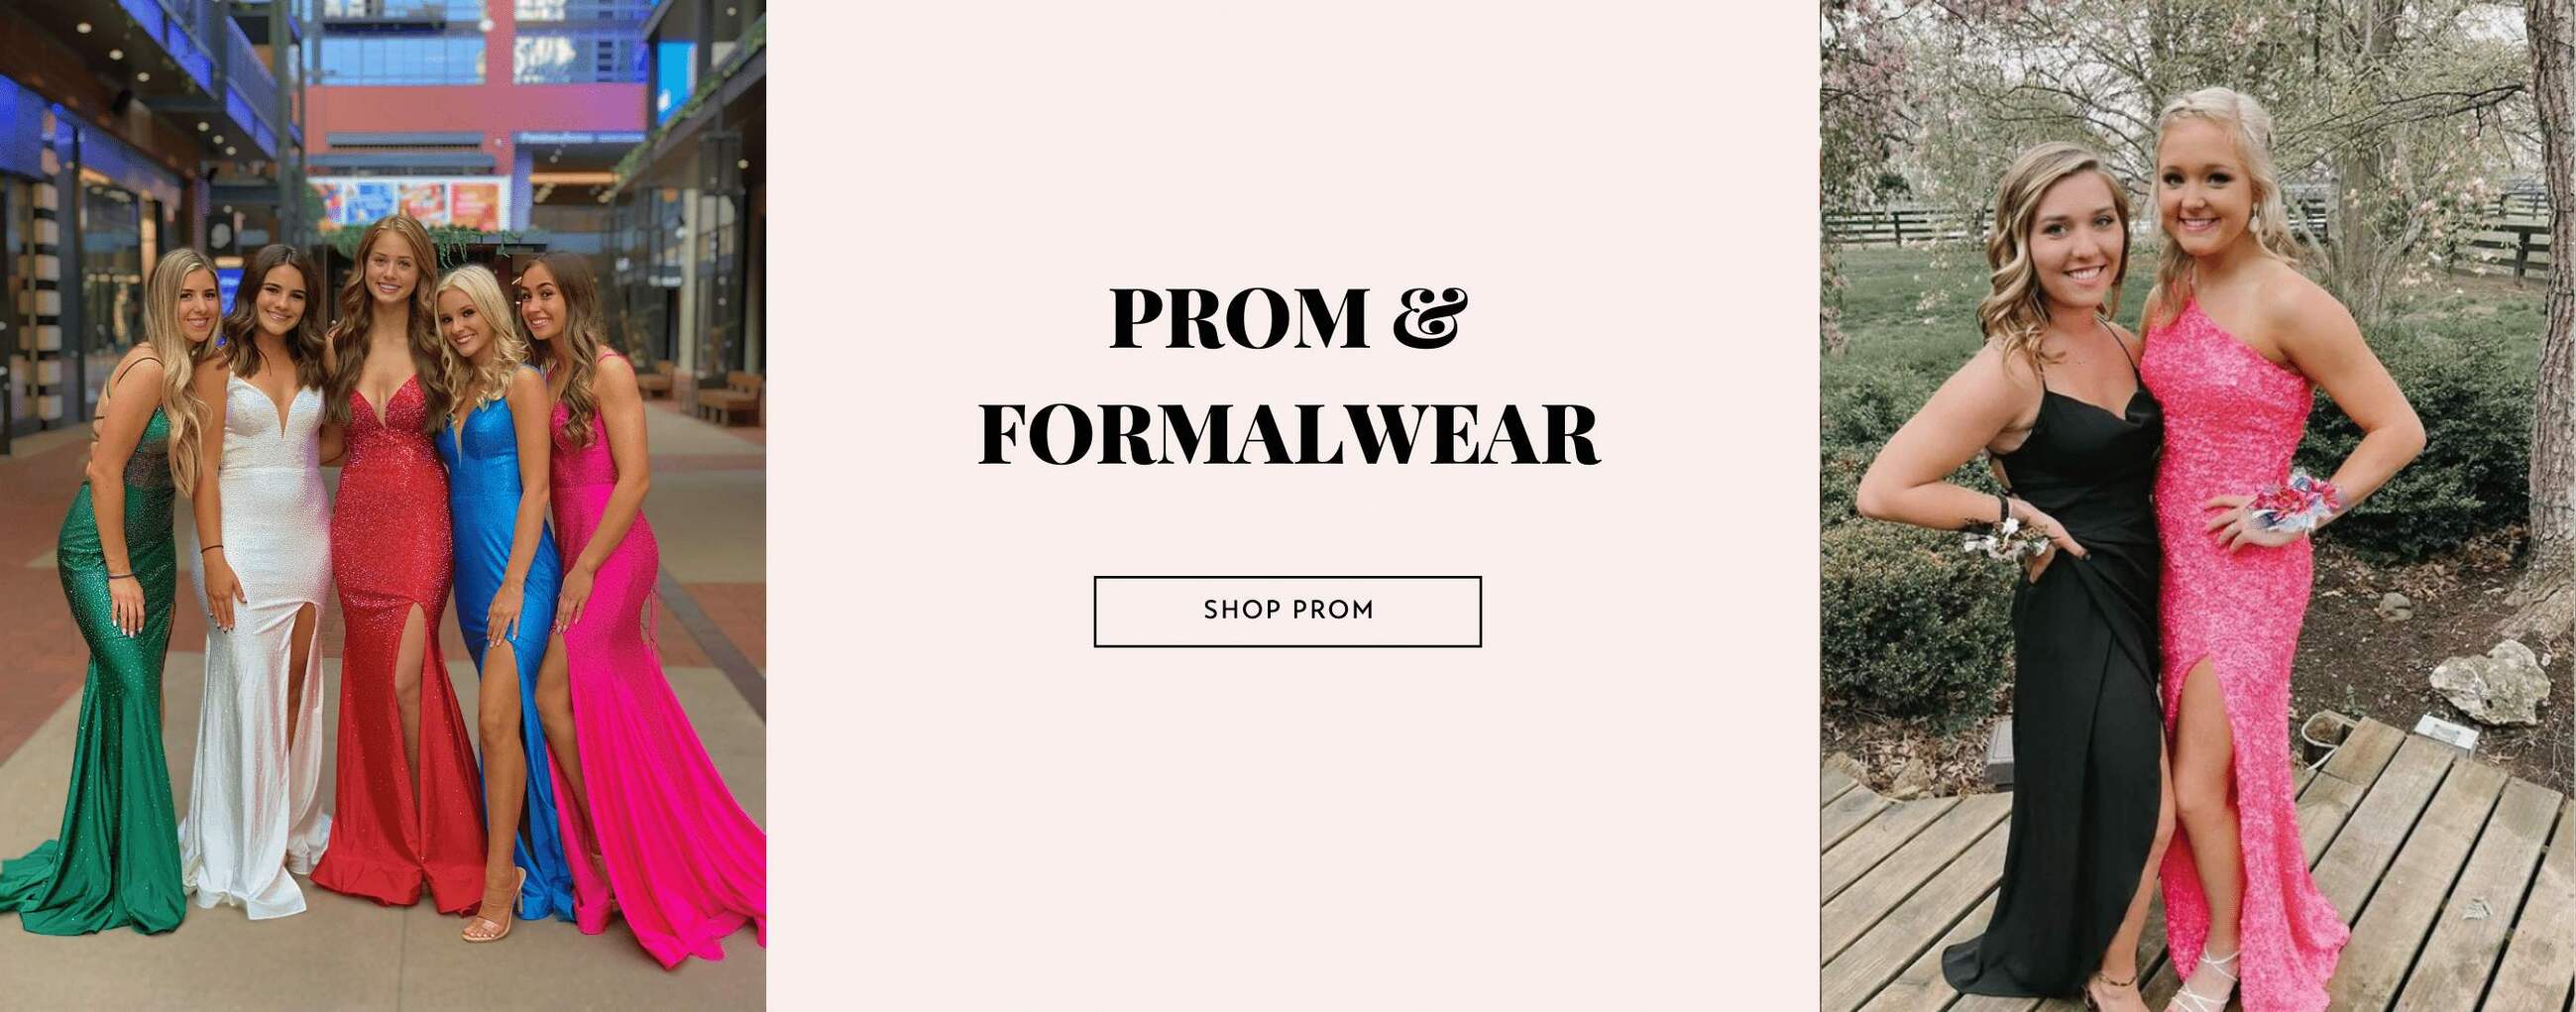 Prom & Formalwear - Desktop Image